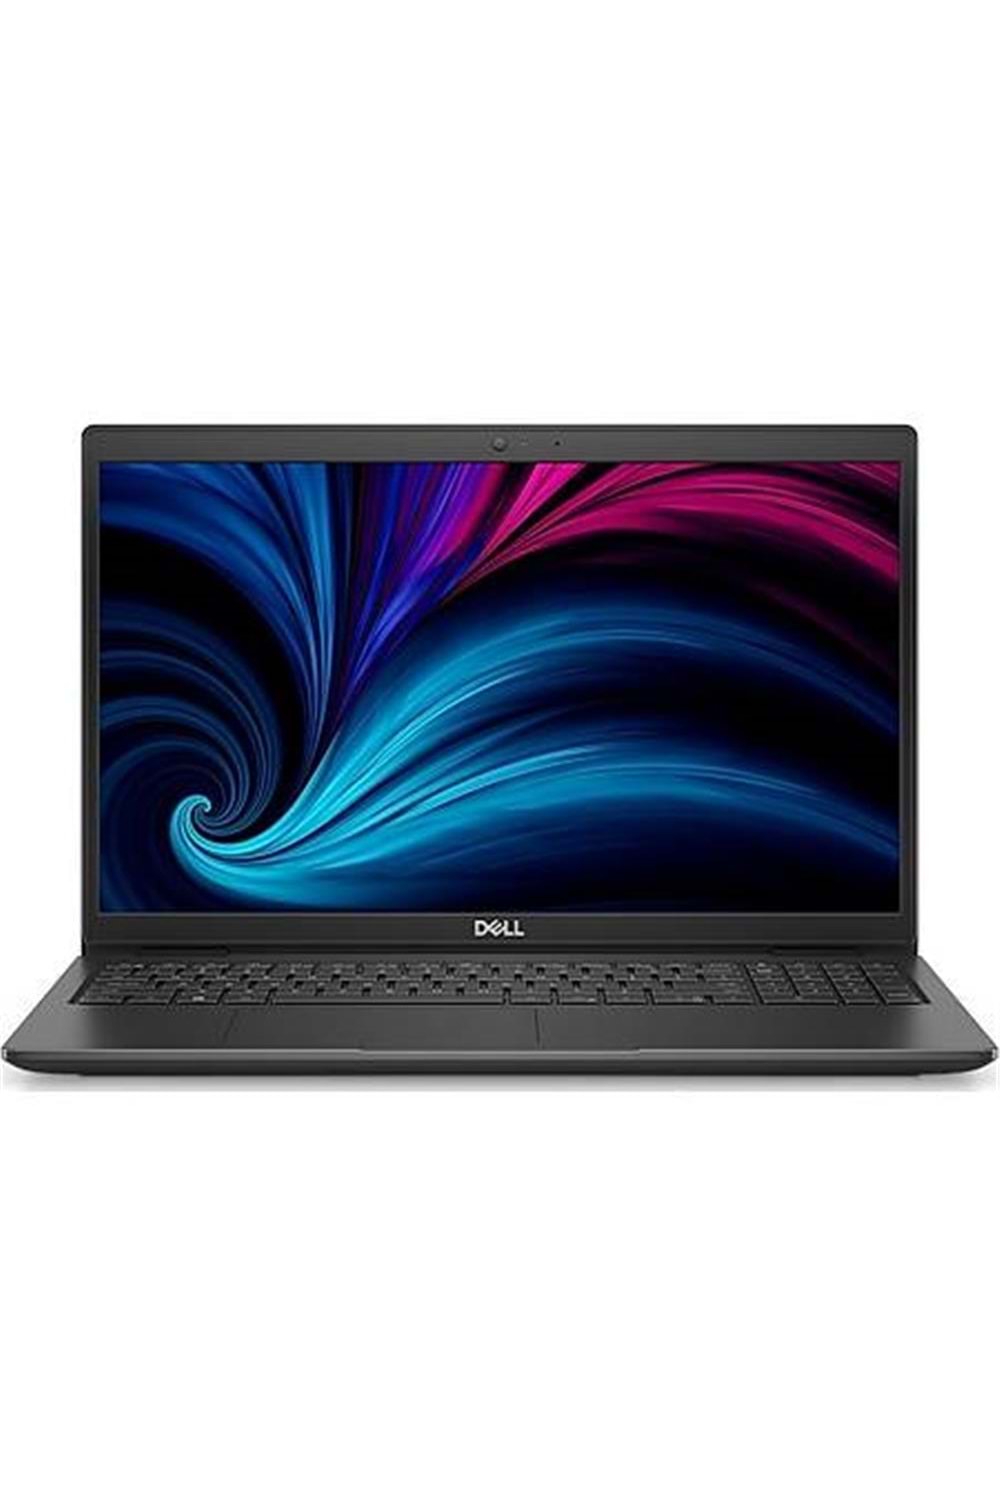 Dell Latitude 3520 N066L352015Emea_U I5-1135G7 16G 512G Ssd 15.6 Fhd Ubuntu Notebook